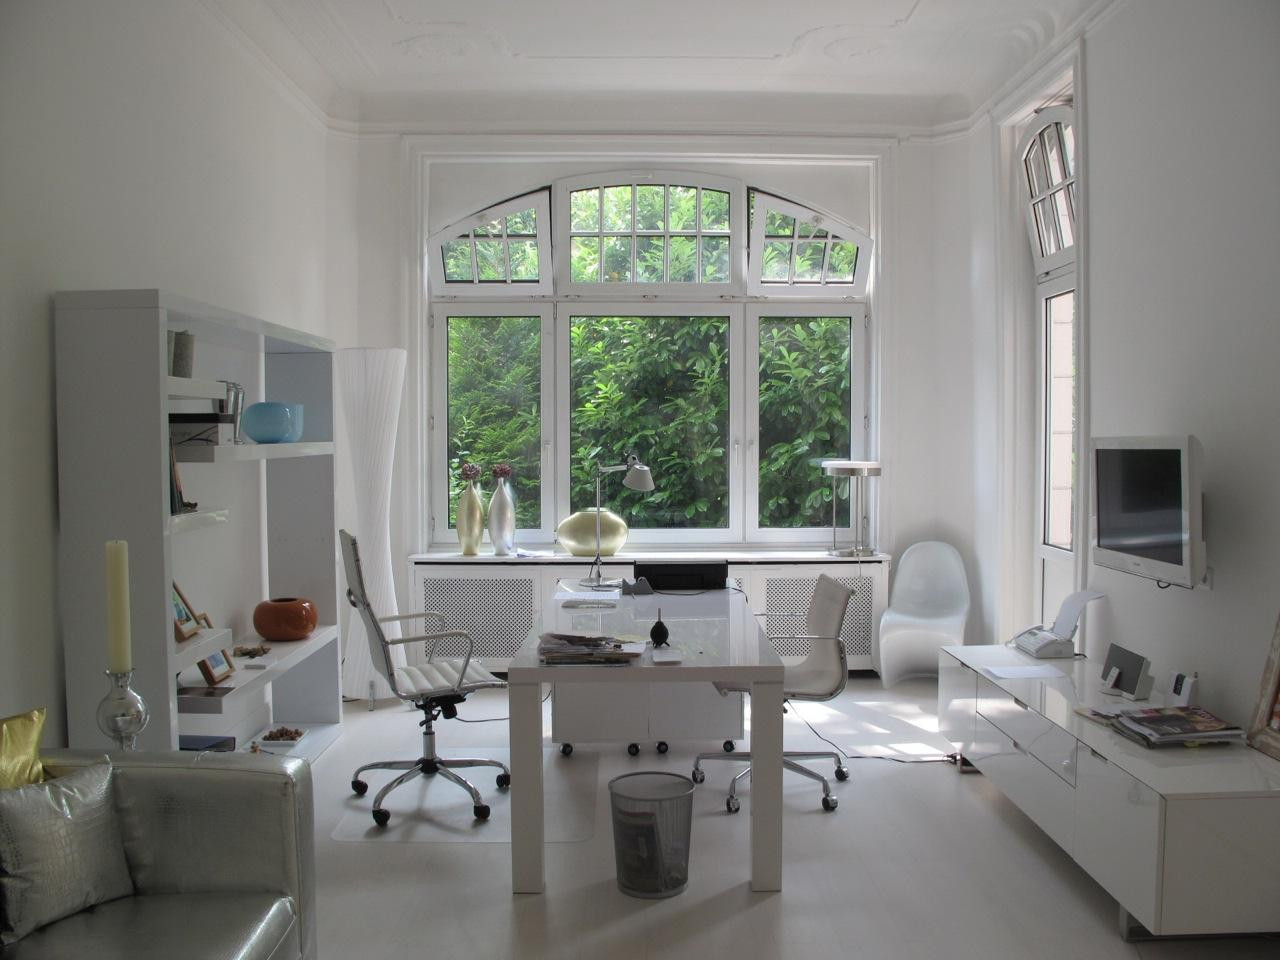 Wohnzimmer Arbeitsplatz • Bilder &amp; Ideen • Couch intended for Arbeitsbereich Im Wohnzimmer